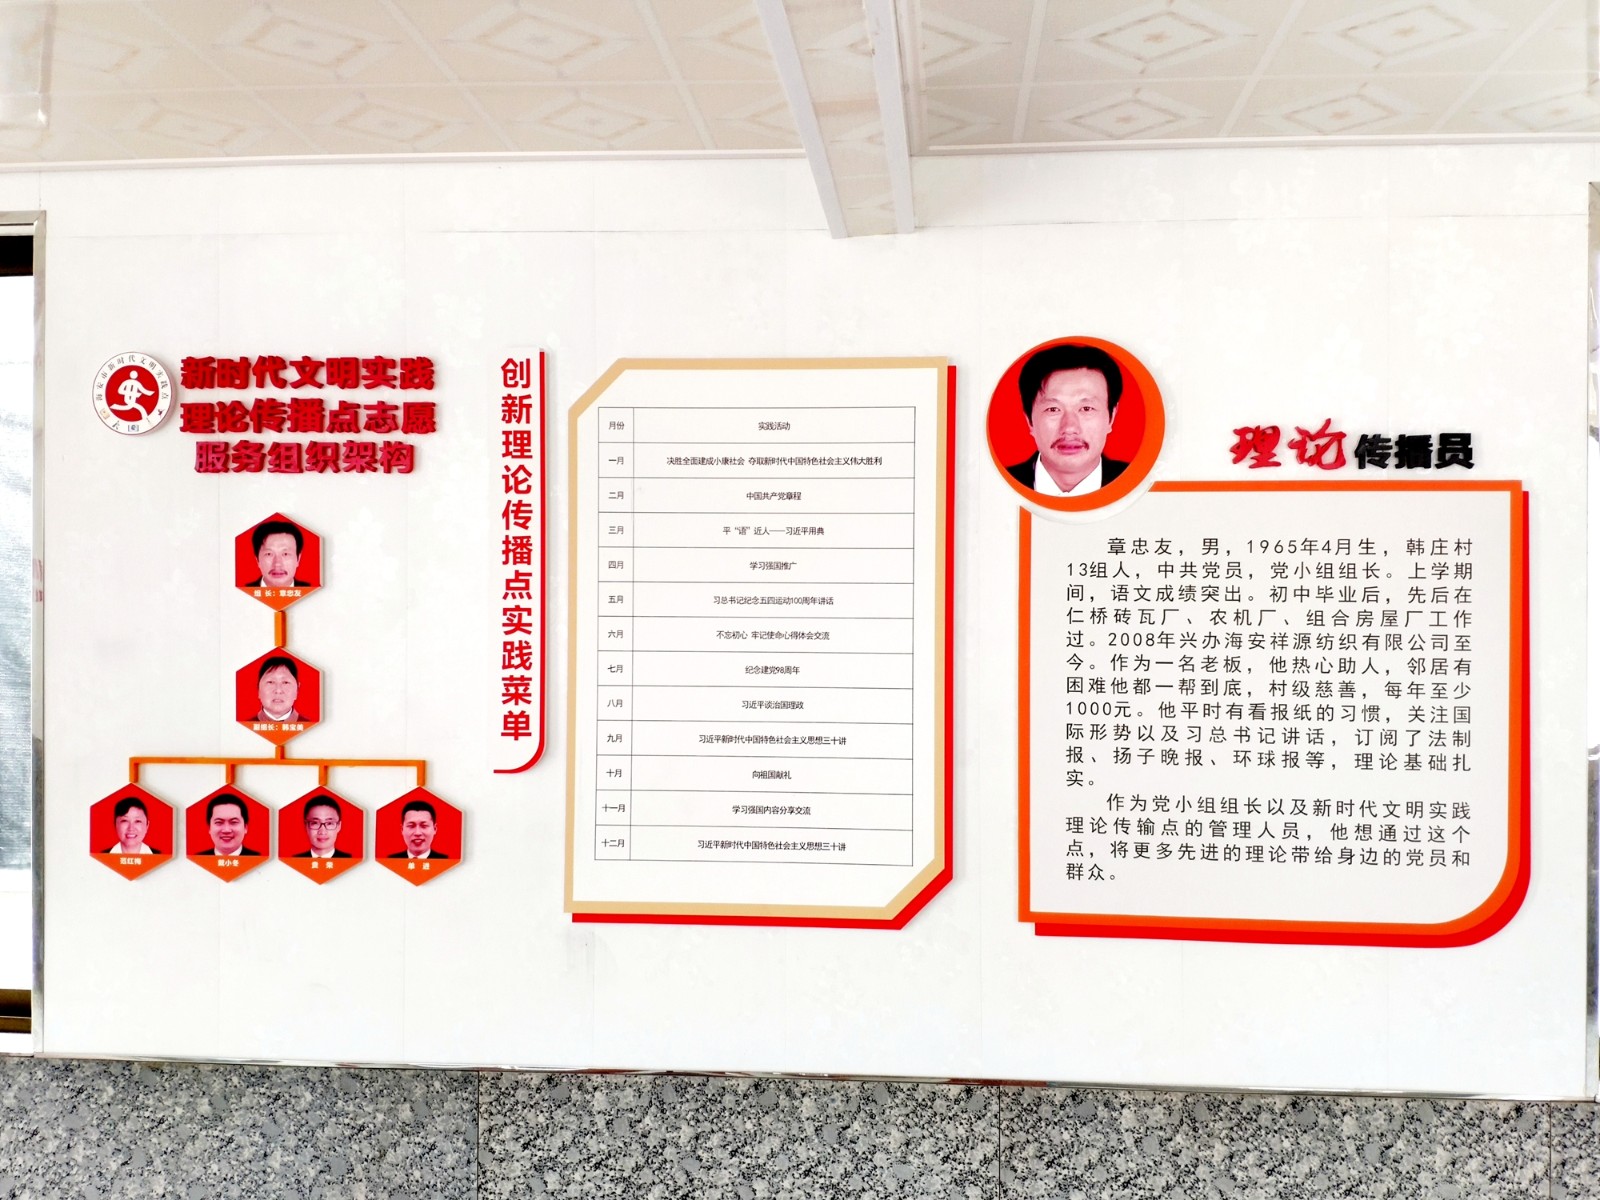 7 韩庄村党总支部、村文明实践站帮助他进行示范点打造 .jpg